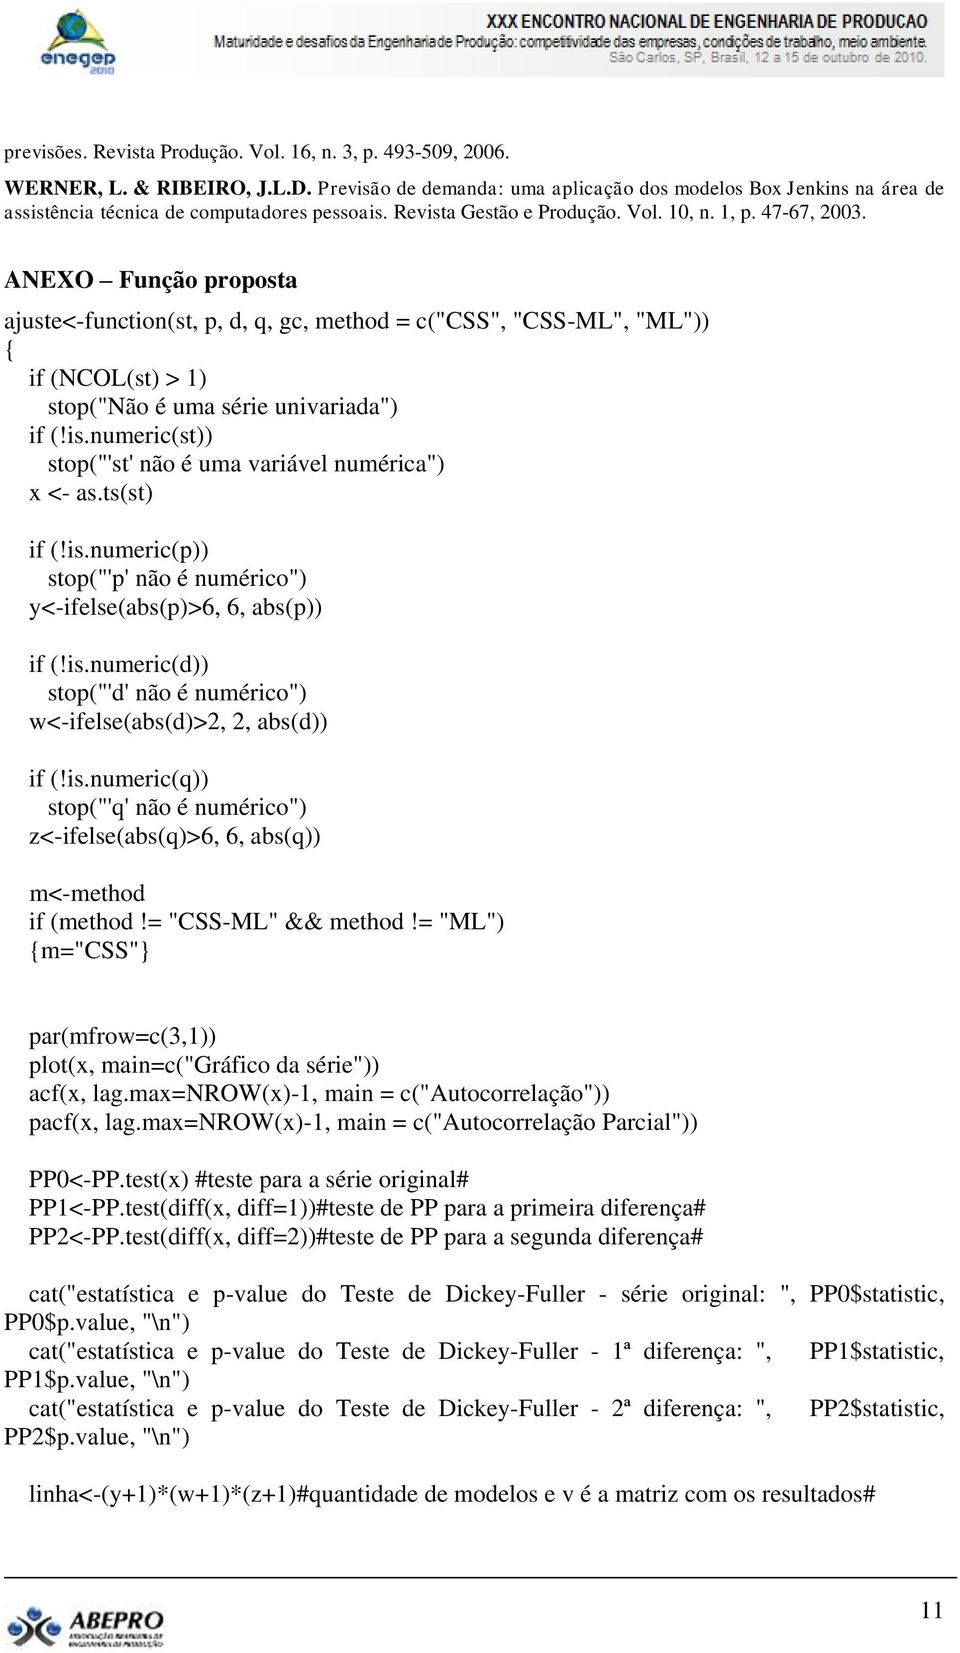 ANEXO Função proposa ajuse<-funcion(s, p, d, q, gc, mehod = c("css", "CSS-ML", "ML")) if (NCOL(s) > 1) sop("não é uma série univariada") if (!is.